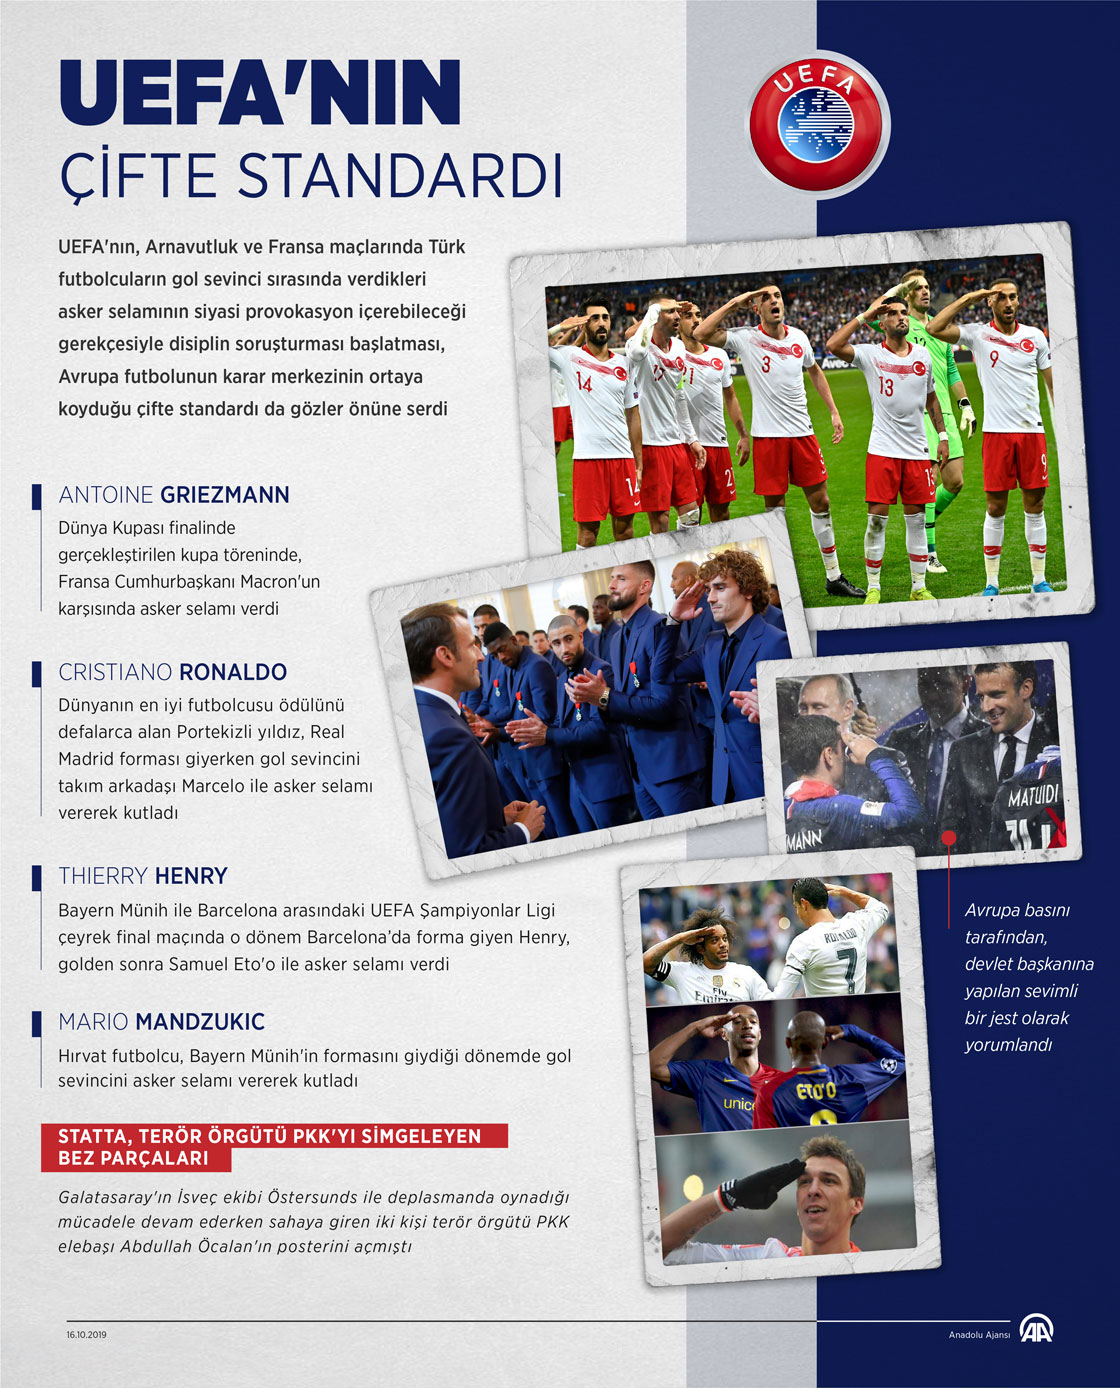 UEFA'nın çifte standardı